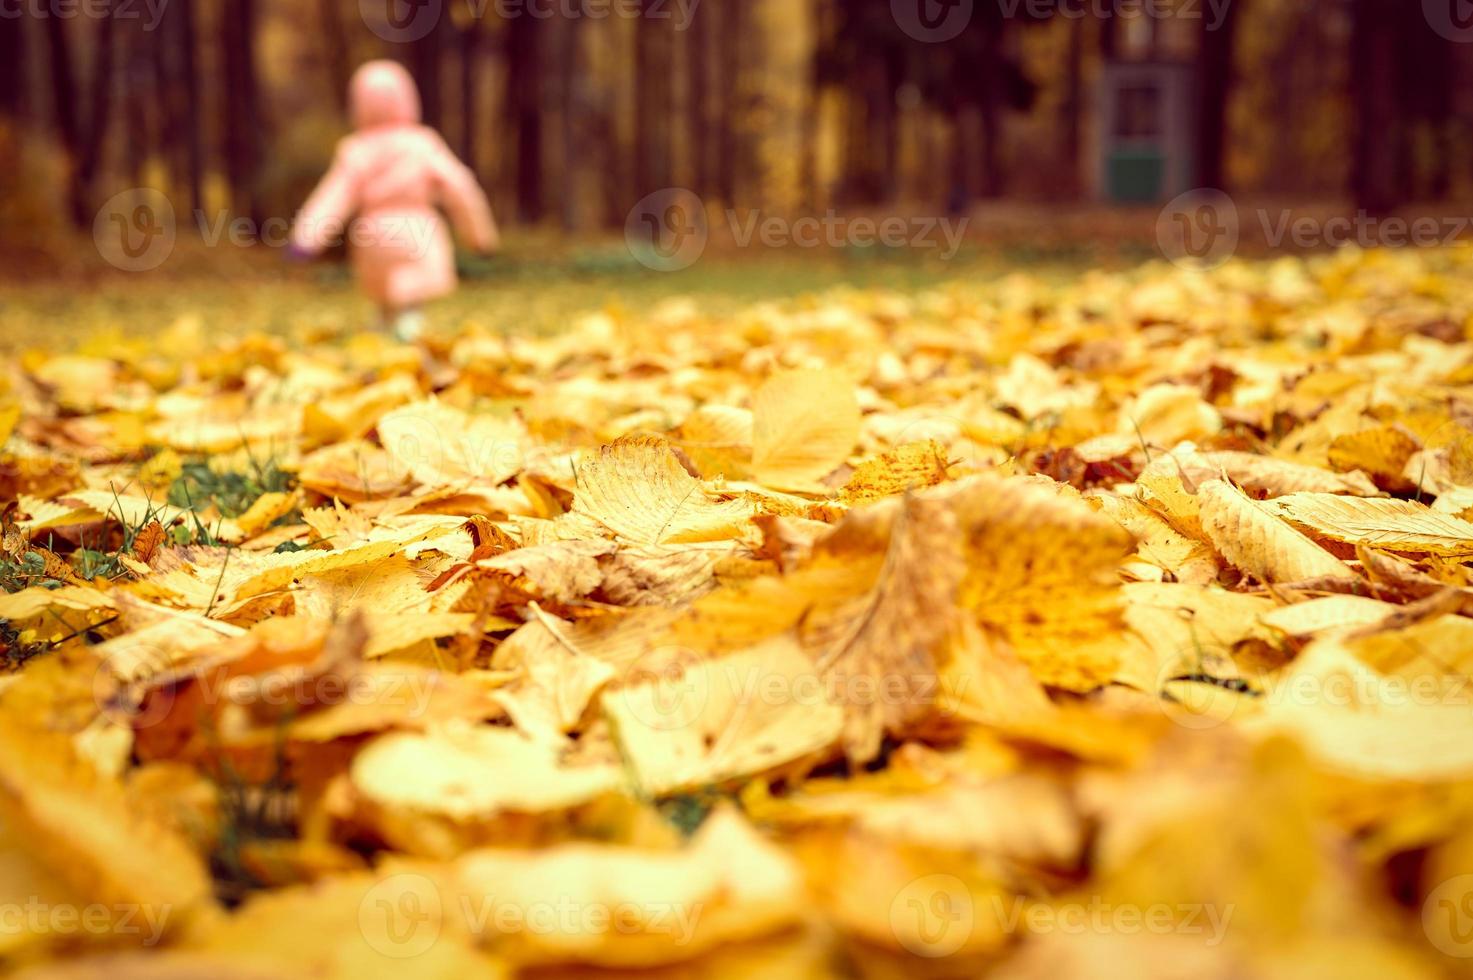 corriendo caminando niña niño en un parque de otoño foto